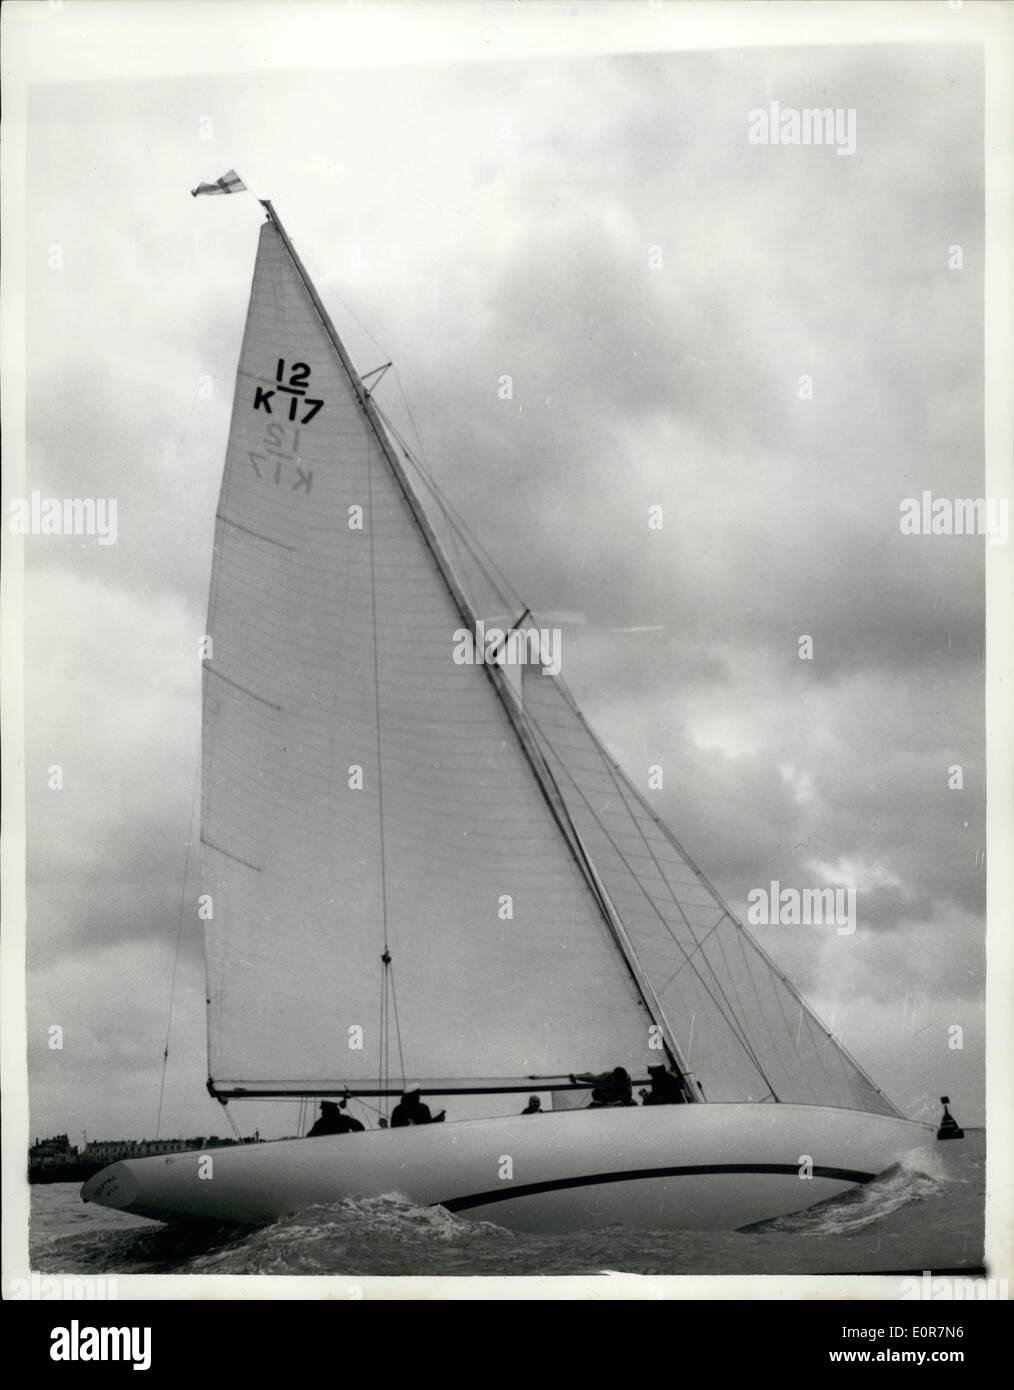 Mai 05, 1958 - Mettre le sceptre à travers son épreuve. : Le sceptre yach le challenger de l'America's Cup à Rhode Island, en septembre prochain - en photo pendant son procès dans le Solent. Banque D'Images